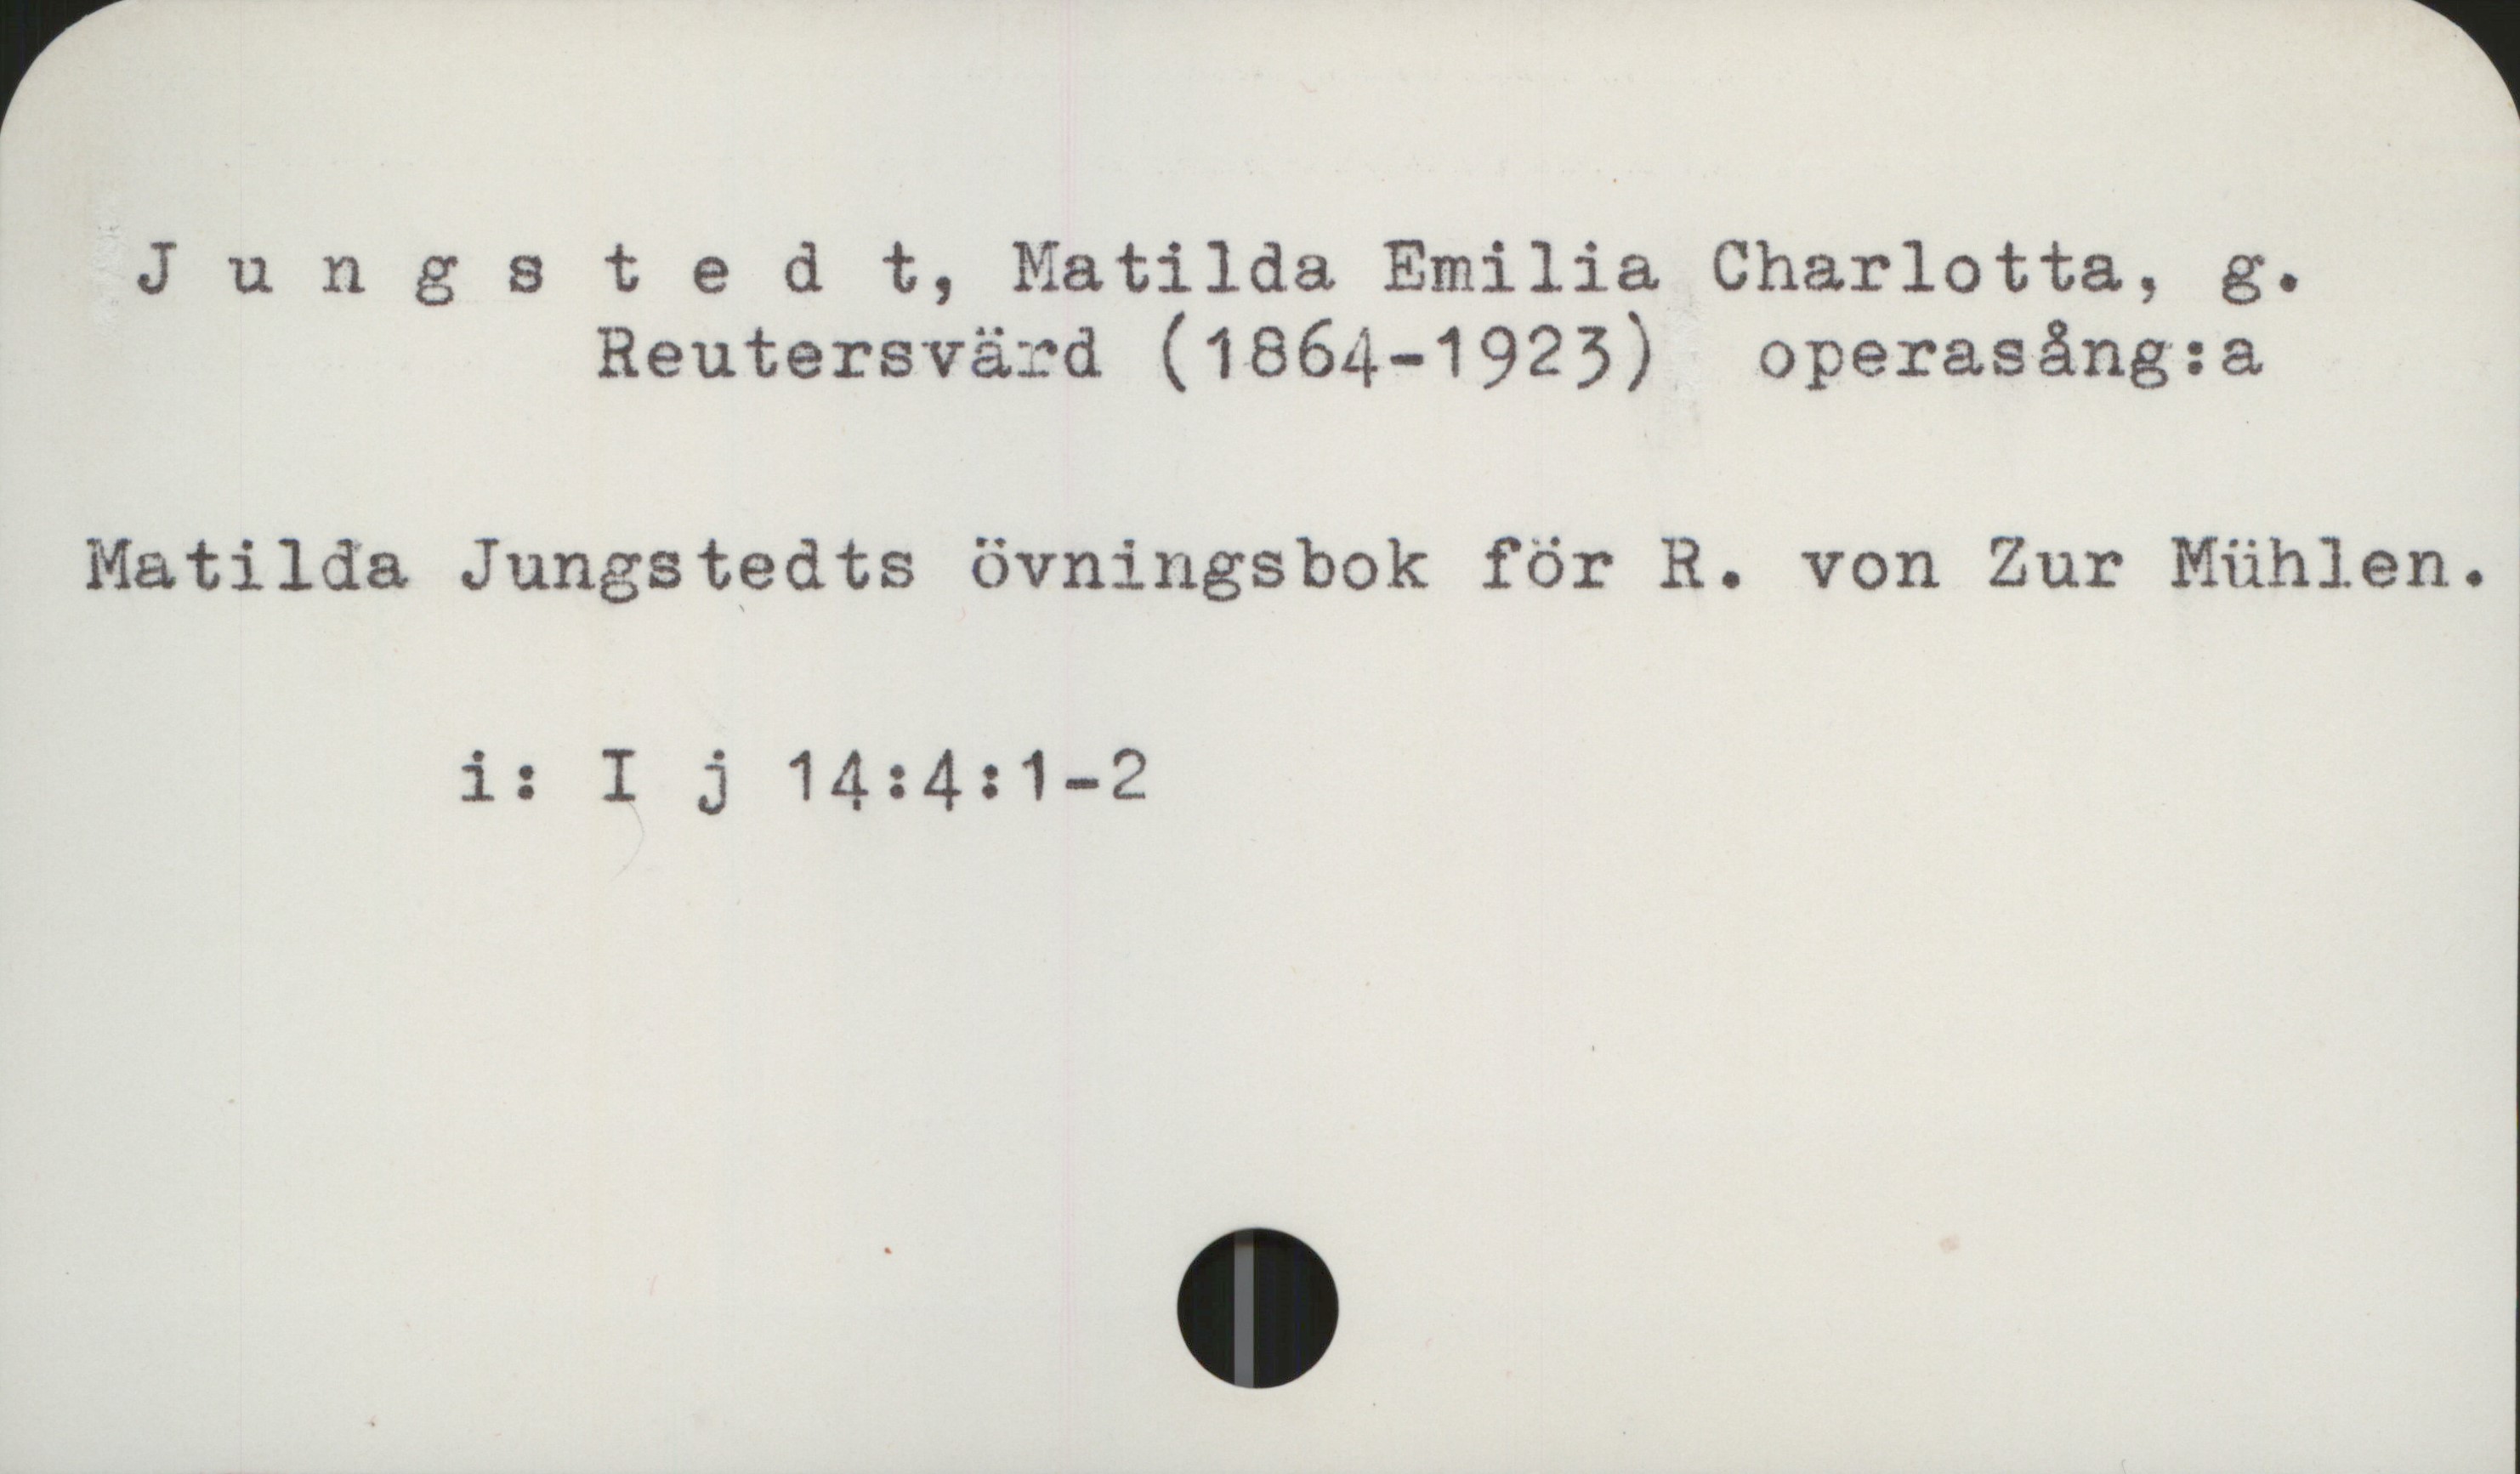 Jungstedt, Matilda (1864-1923) Jungstedt, Matilda Emilia Charlotta, 
            g. Reutersvärd (1864-1923) operasång:a

Matilda Jungstedts övningsbok för R. von Zur Mühlen

             i:  I j 14: 4: 1-2